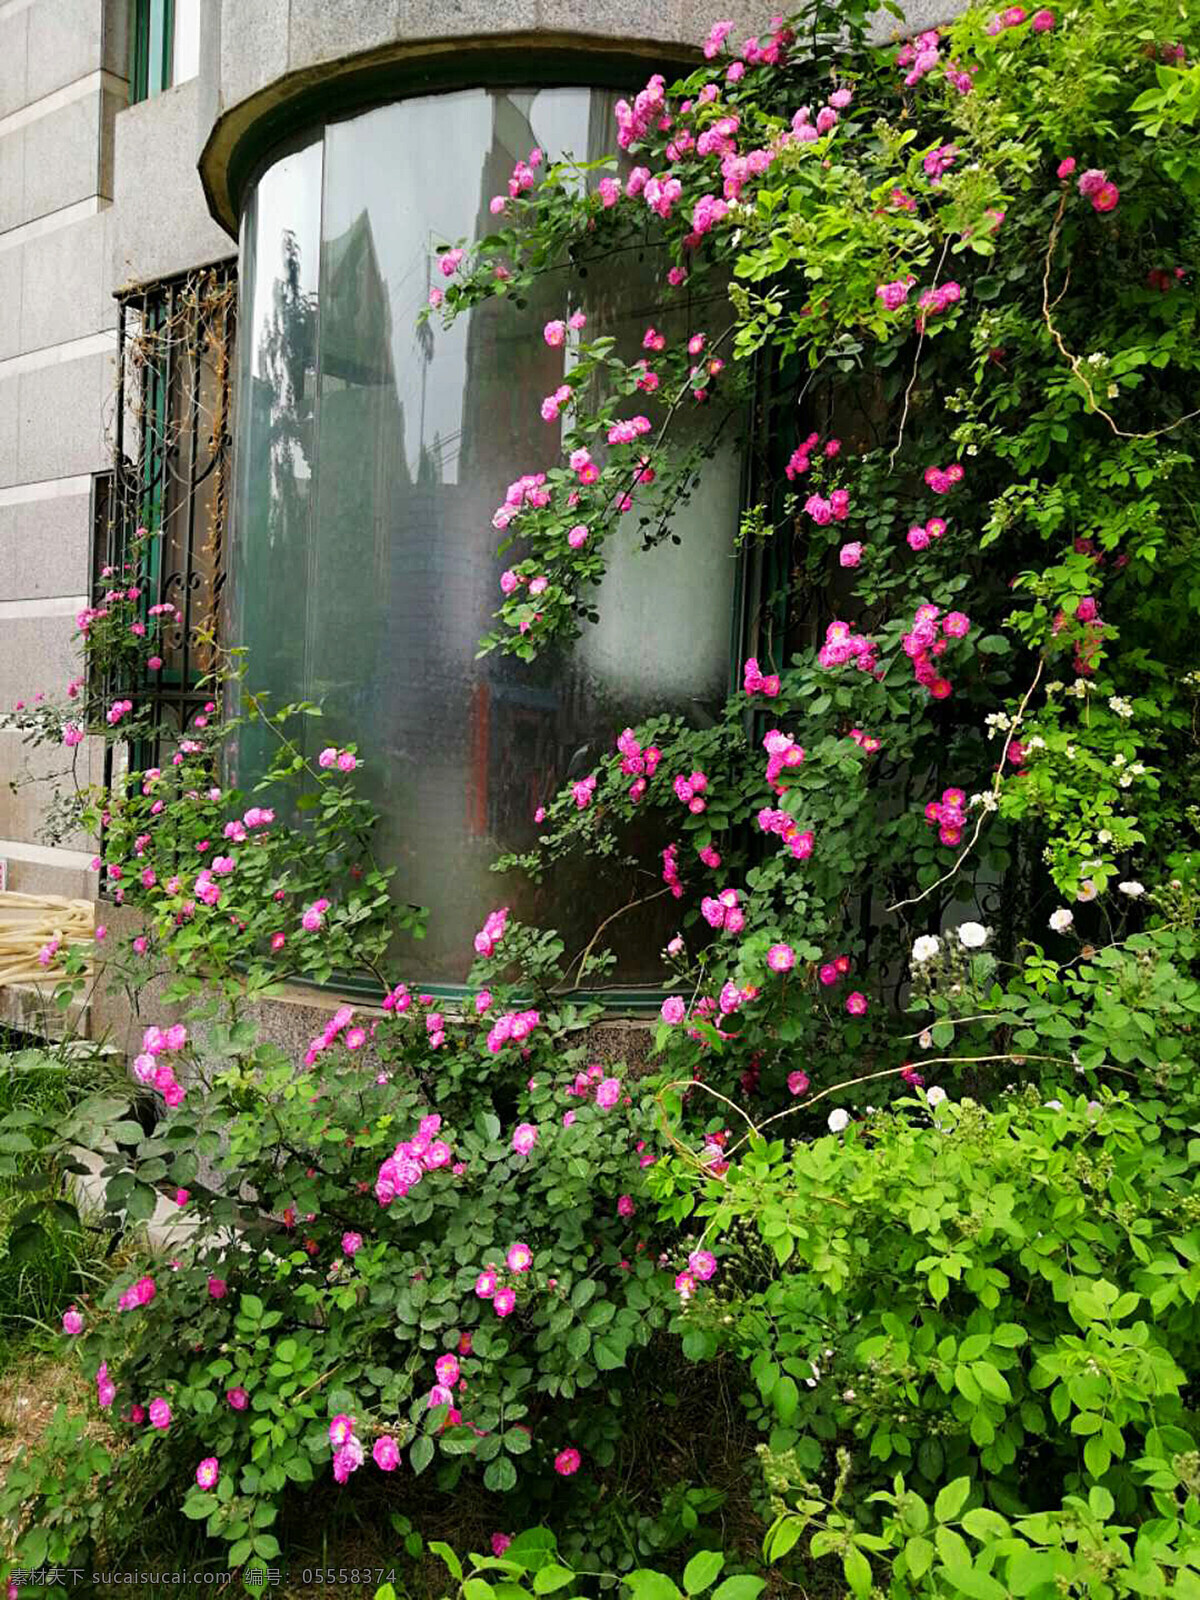 窗外 盛开 蔷薇 花 鲜花 落叶灌木 花卉 观赏 植物 绿叶 花坛 窗 园艺 春天 粉色 植物花卉 生物世界 花草